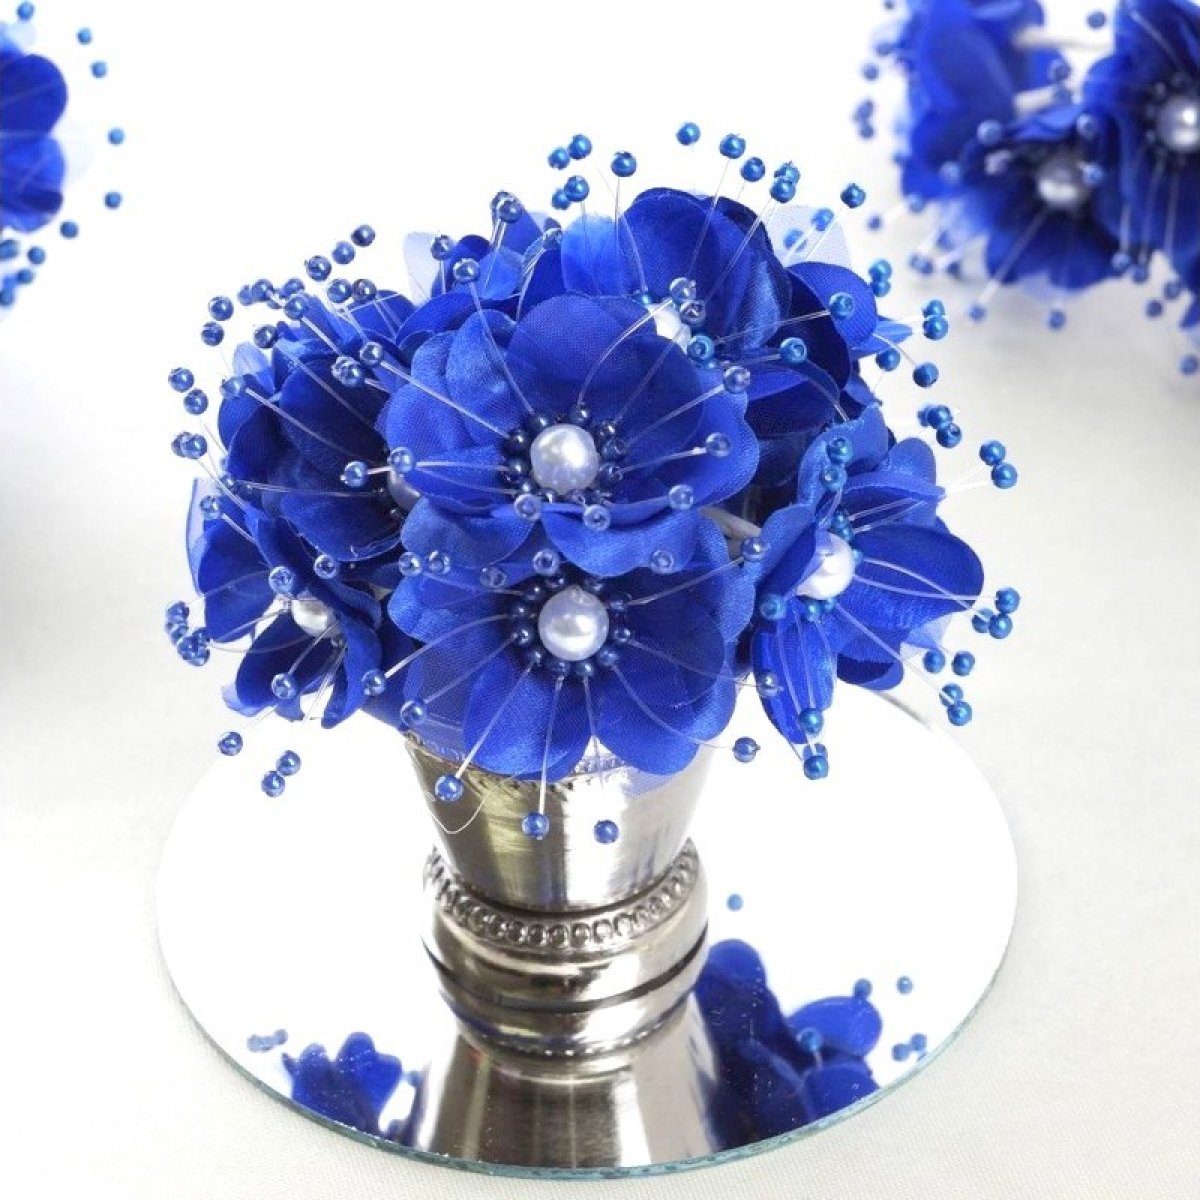 6 fleurs bleu marine avec perles montées sur tige métallique -  deco-dragees-fete.fr